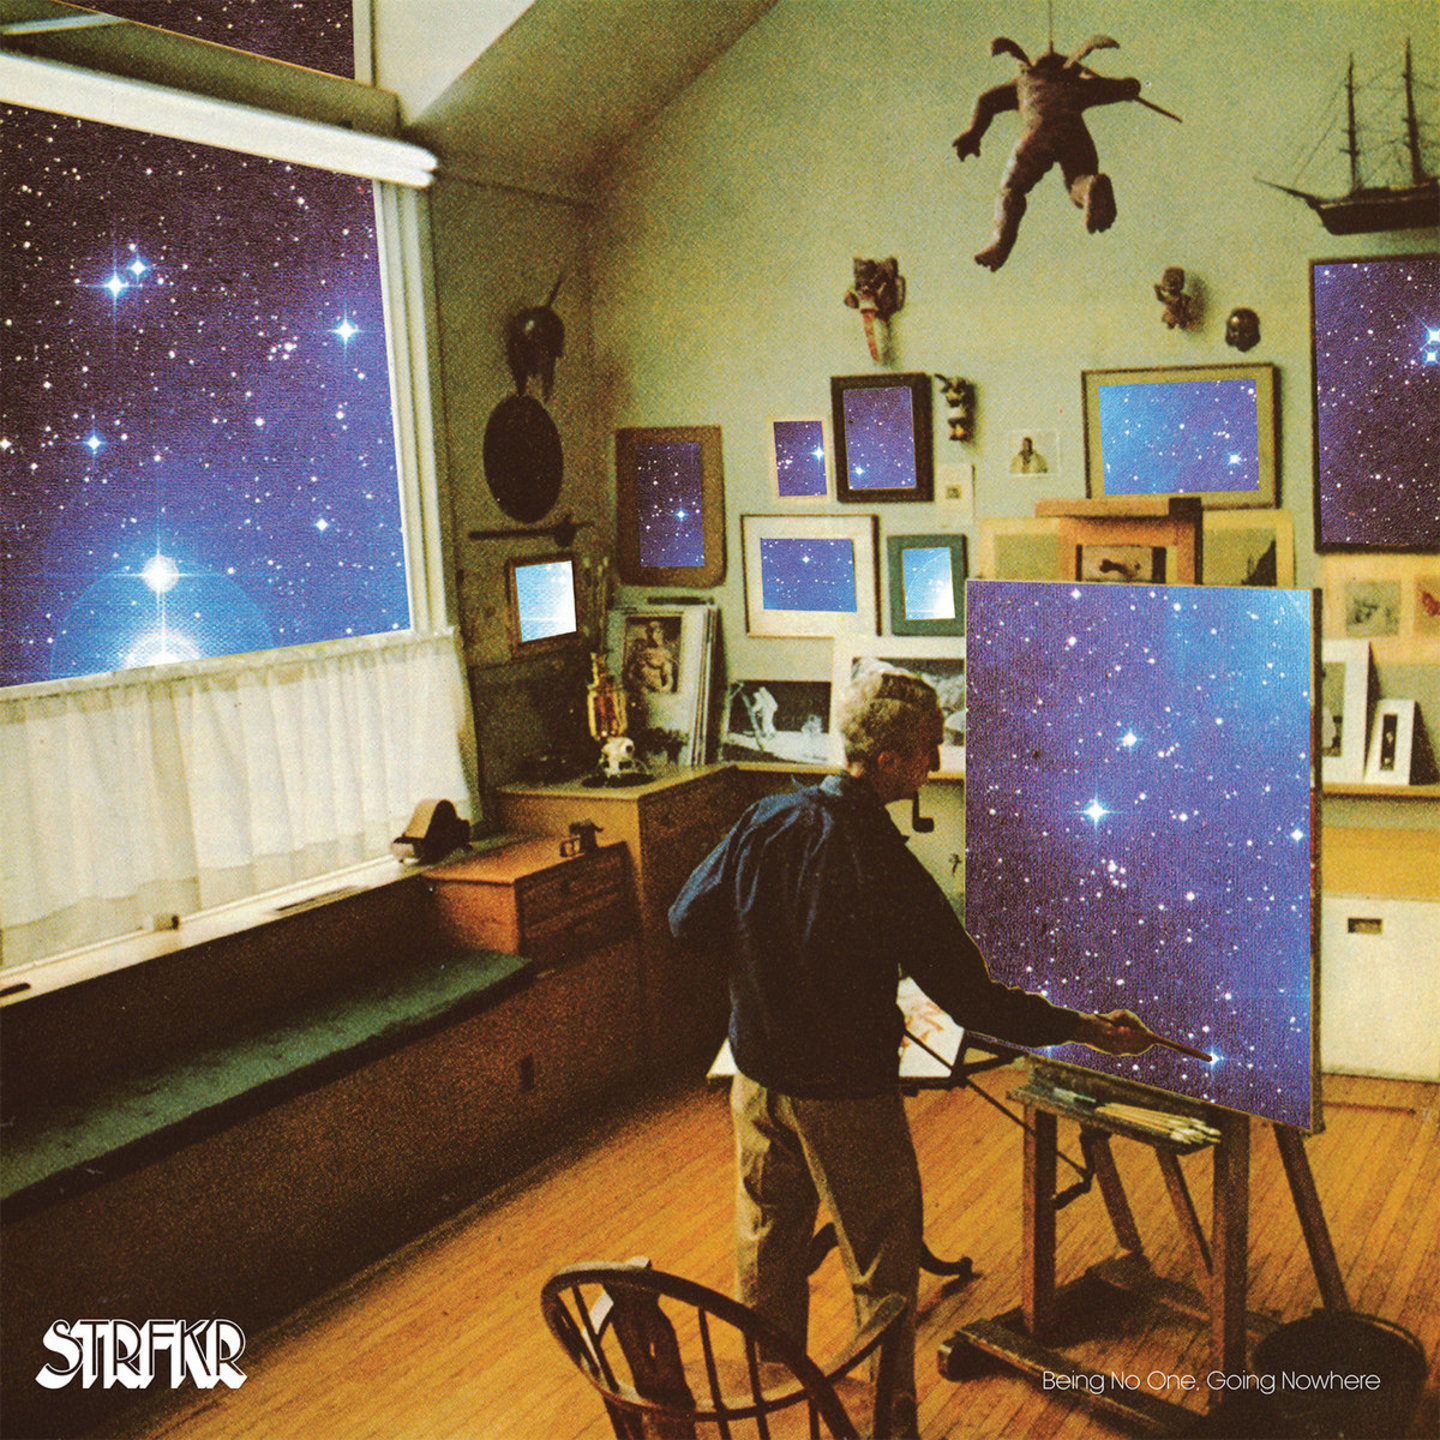 STRFKR - Being No One, Going Nowhere LP Light Blue Vinyl